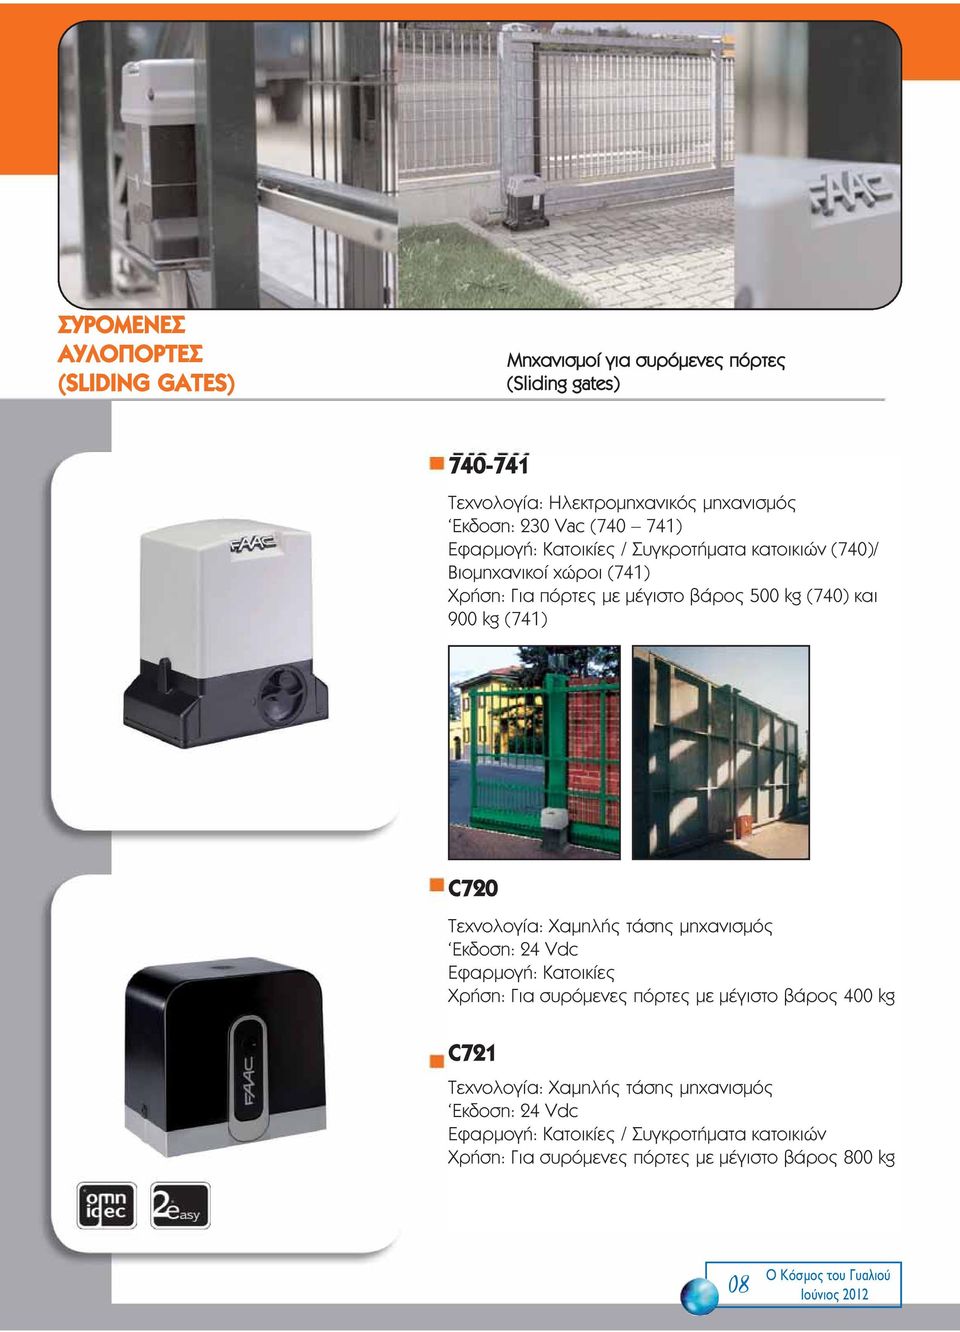 Τεχνολογία: Χαμηλής τάσης μηχανισμός Eκδοση: 24 Vdc Εφαρμογή: Κατοικίες Χρήση: Για συρόμενες πόρτες με μέγιστο βάρος 400 kg C721